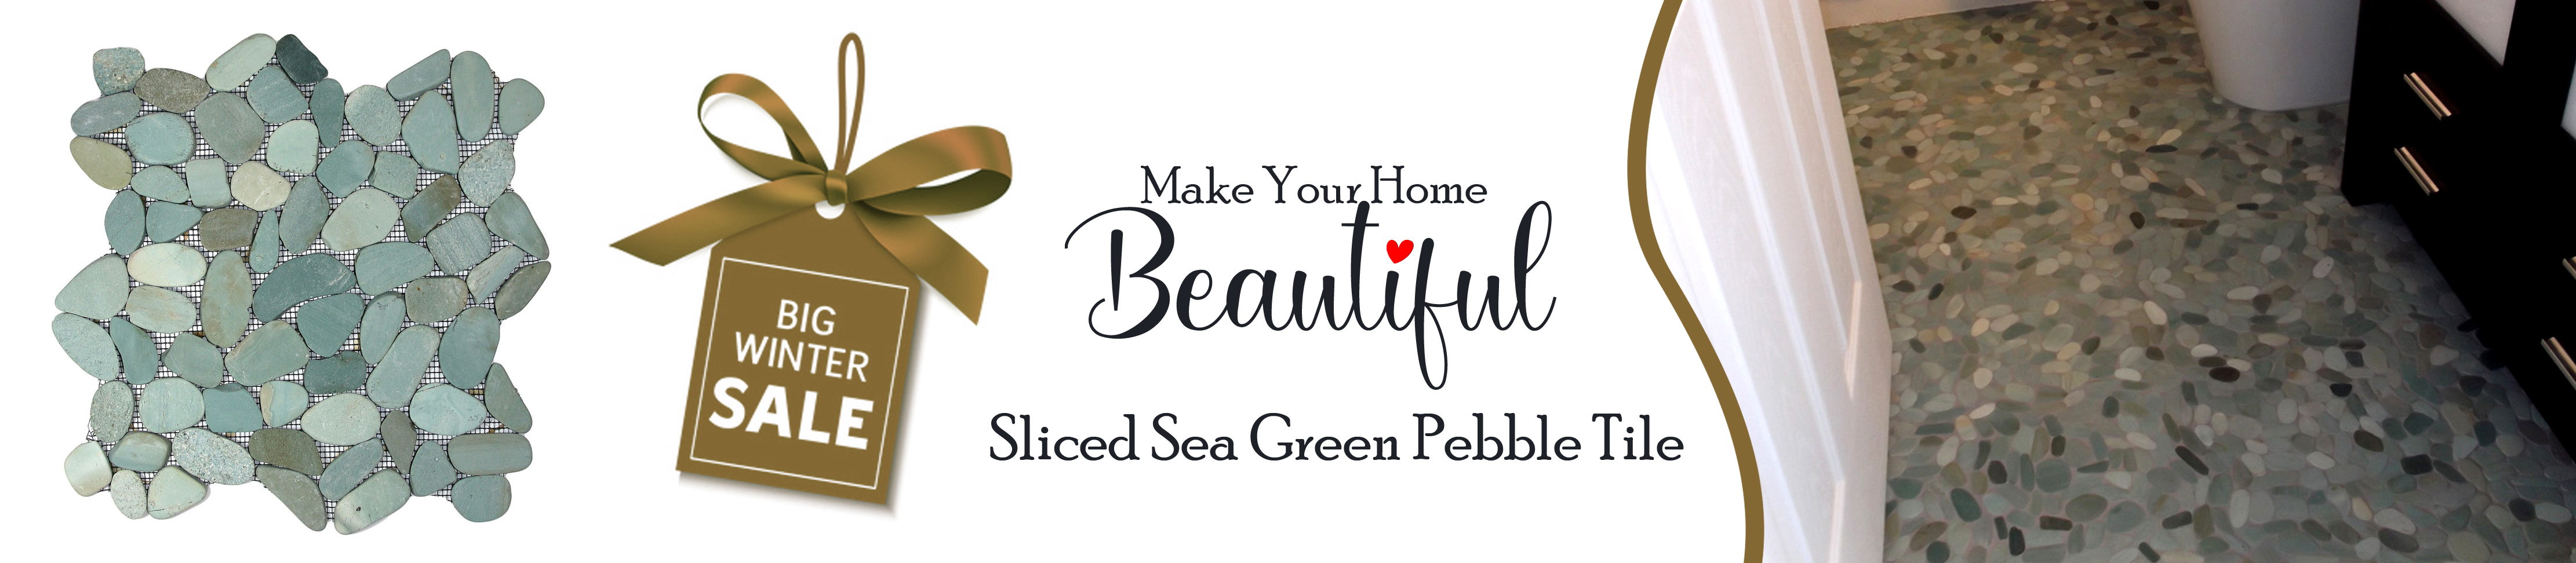 Sliced Sea Green Pebble Tile